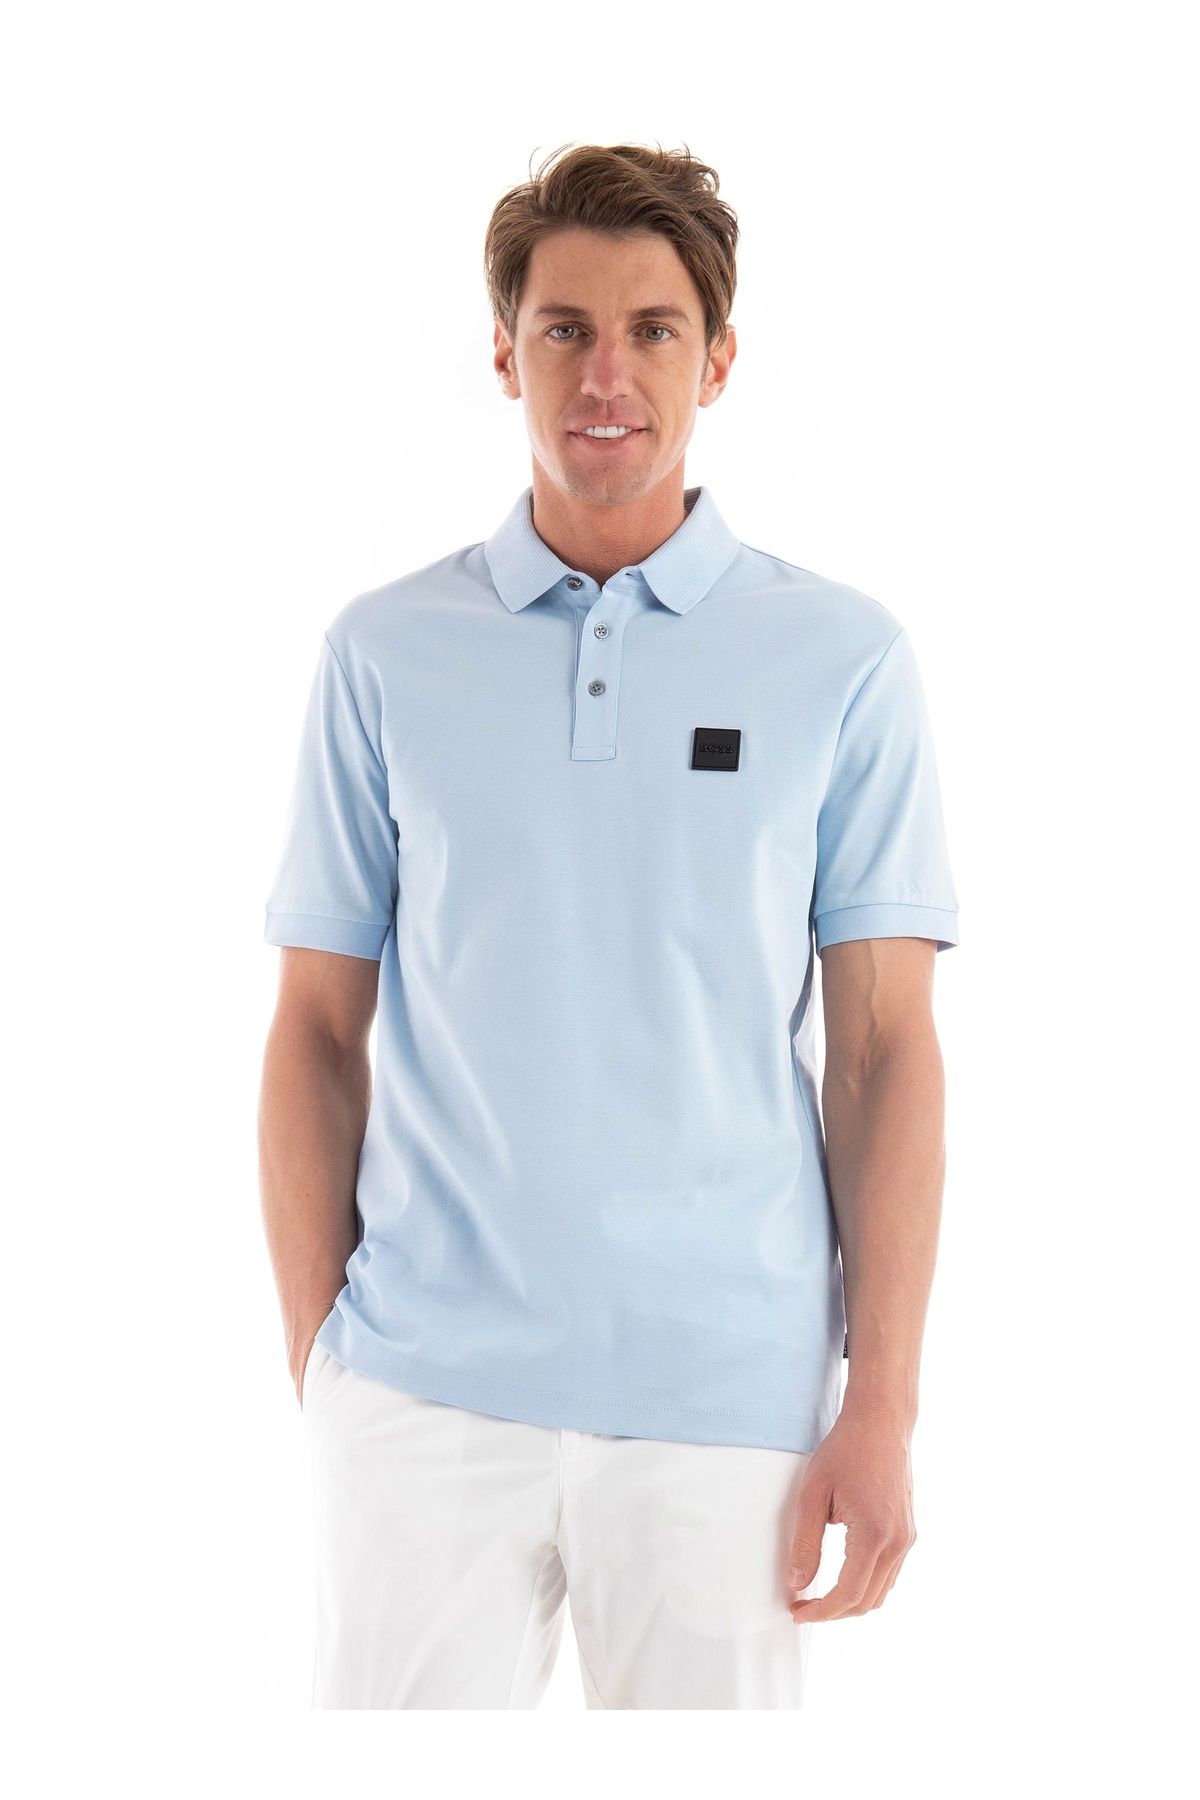 BOSS Erkek Pamuklu Polo Yakalı Düğme Kapamalı Kısa Kollu Açık Mavi Polo Yaka T-Shirt 50515596-450